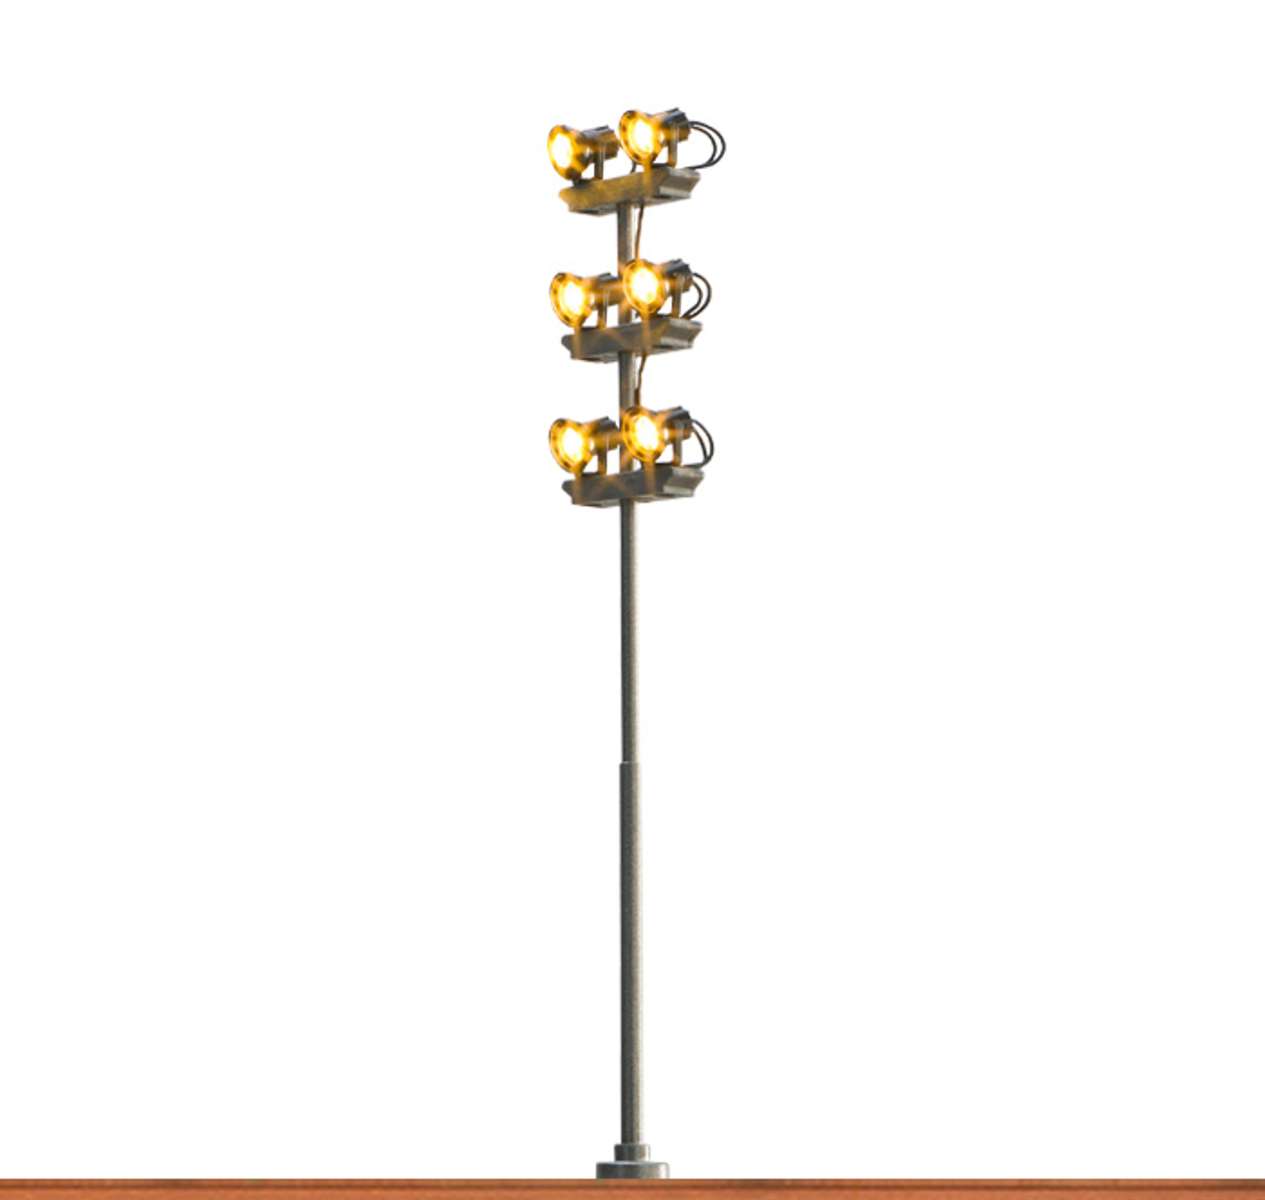 Brawa 84110 - Flutlichtmast 6-fach mit Stecksockel und LED, H= 155mm